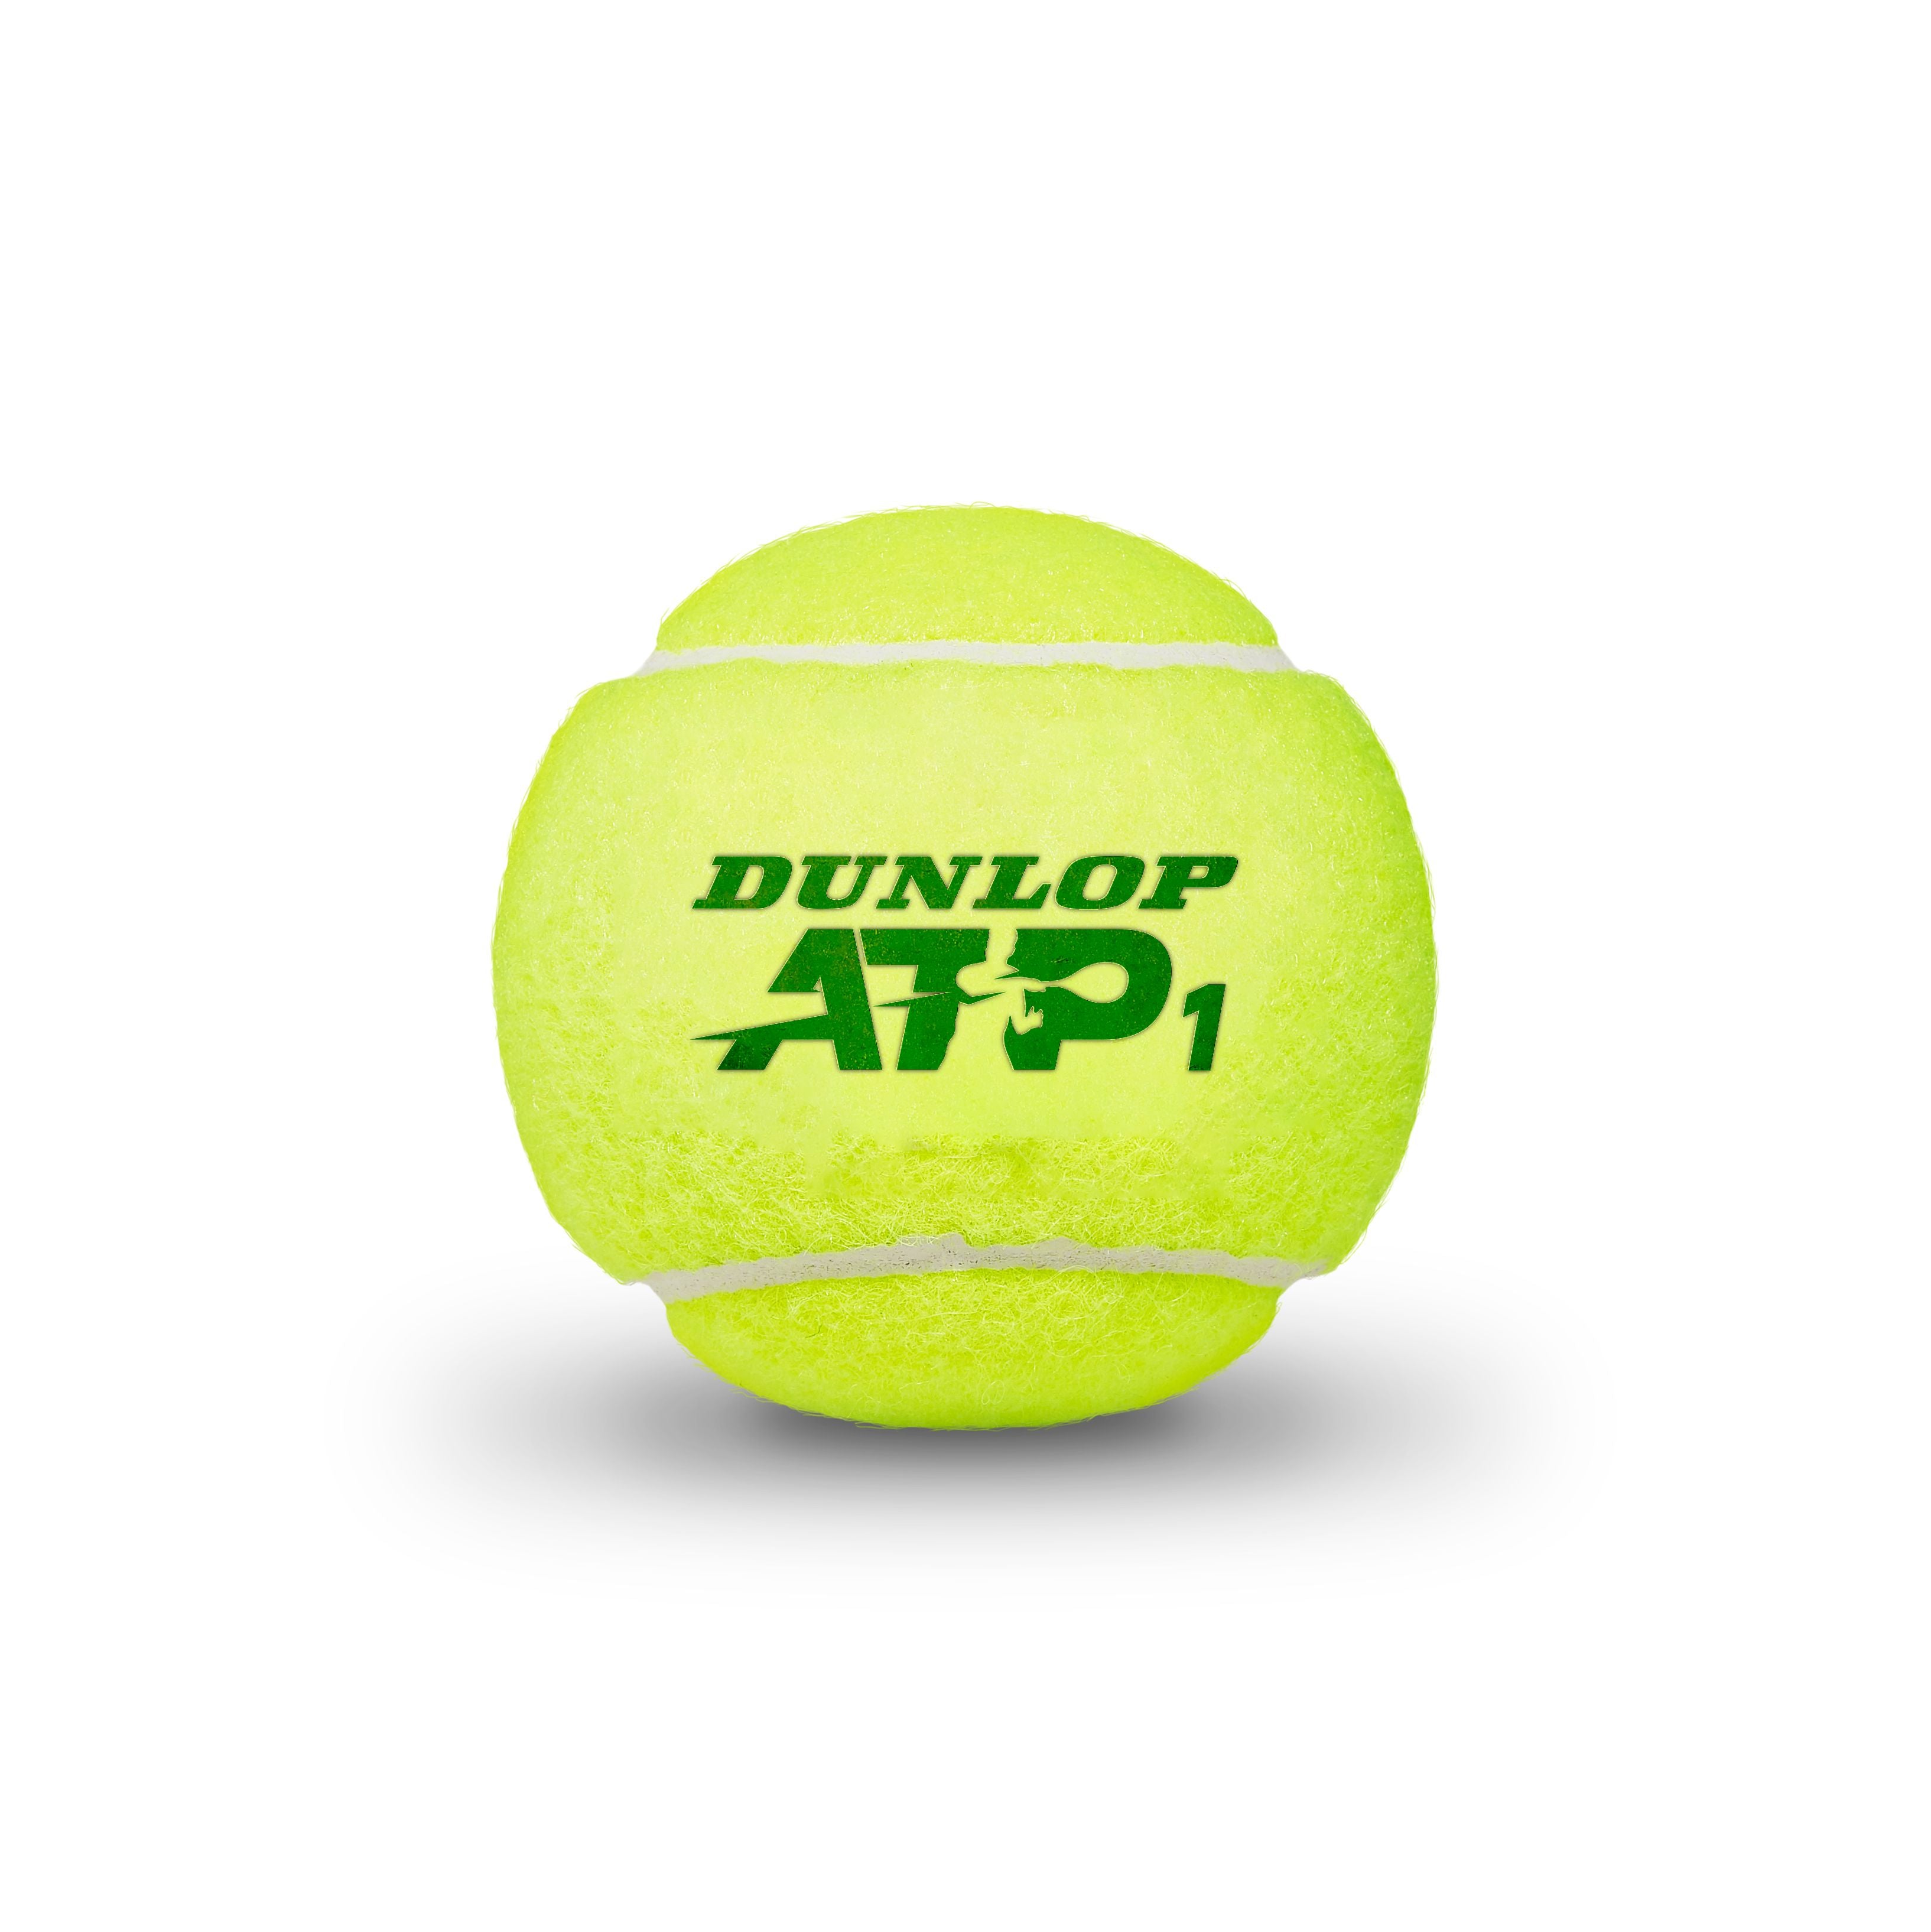 Dunlop ATP Regular Duty Tennis Ball (3 Ball Can)